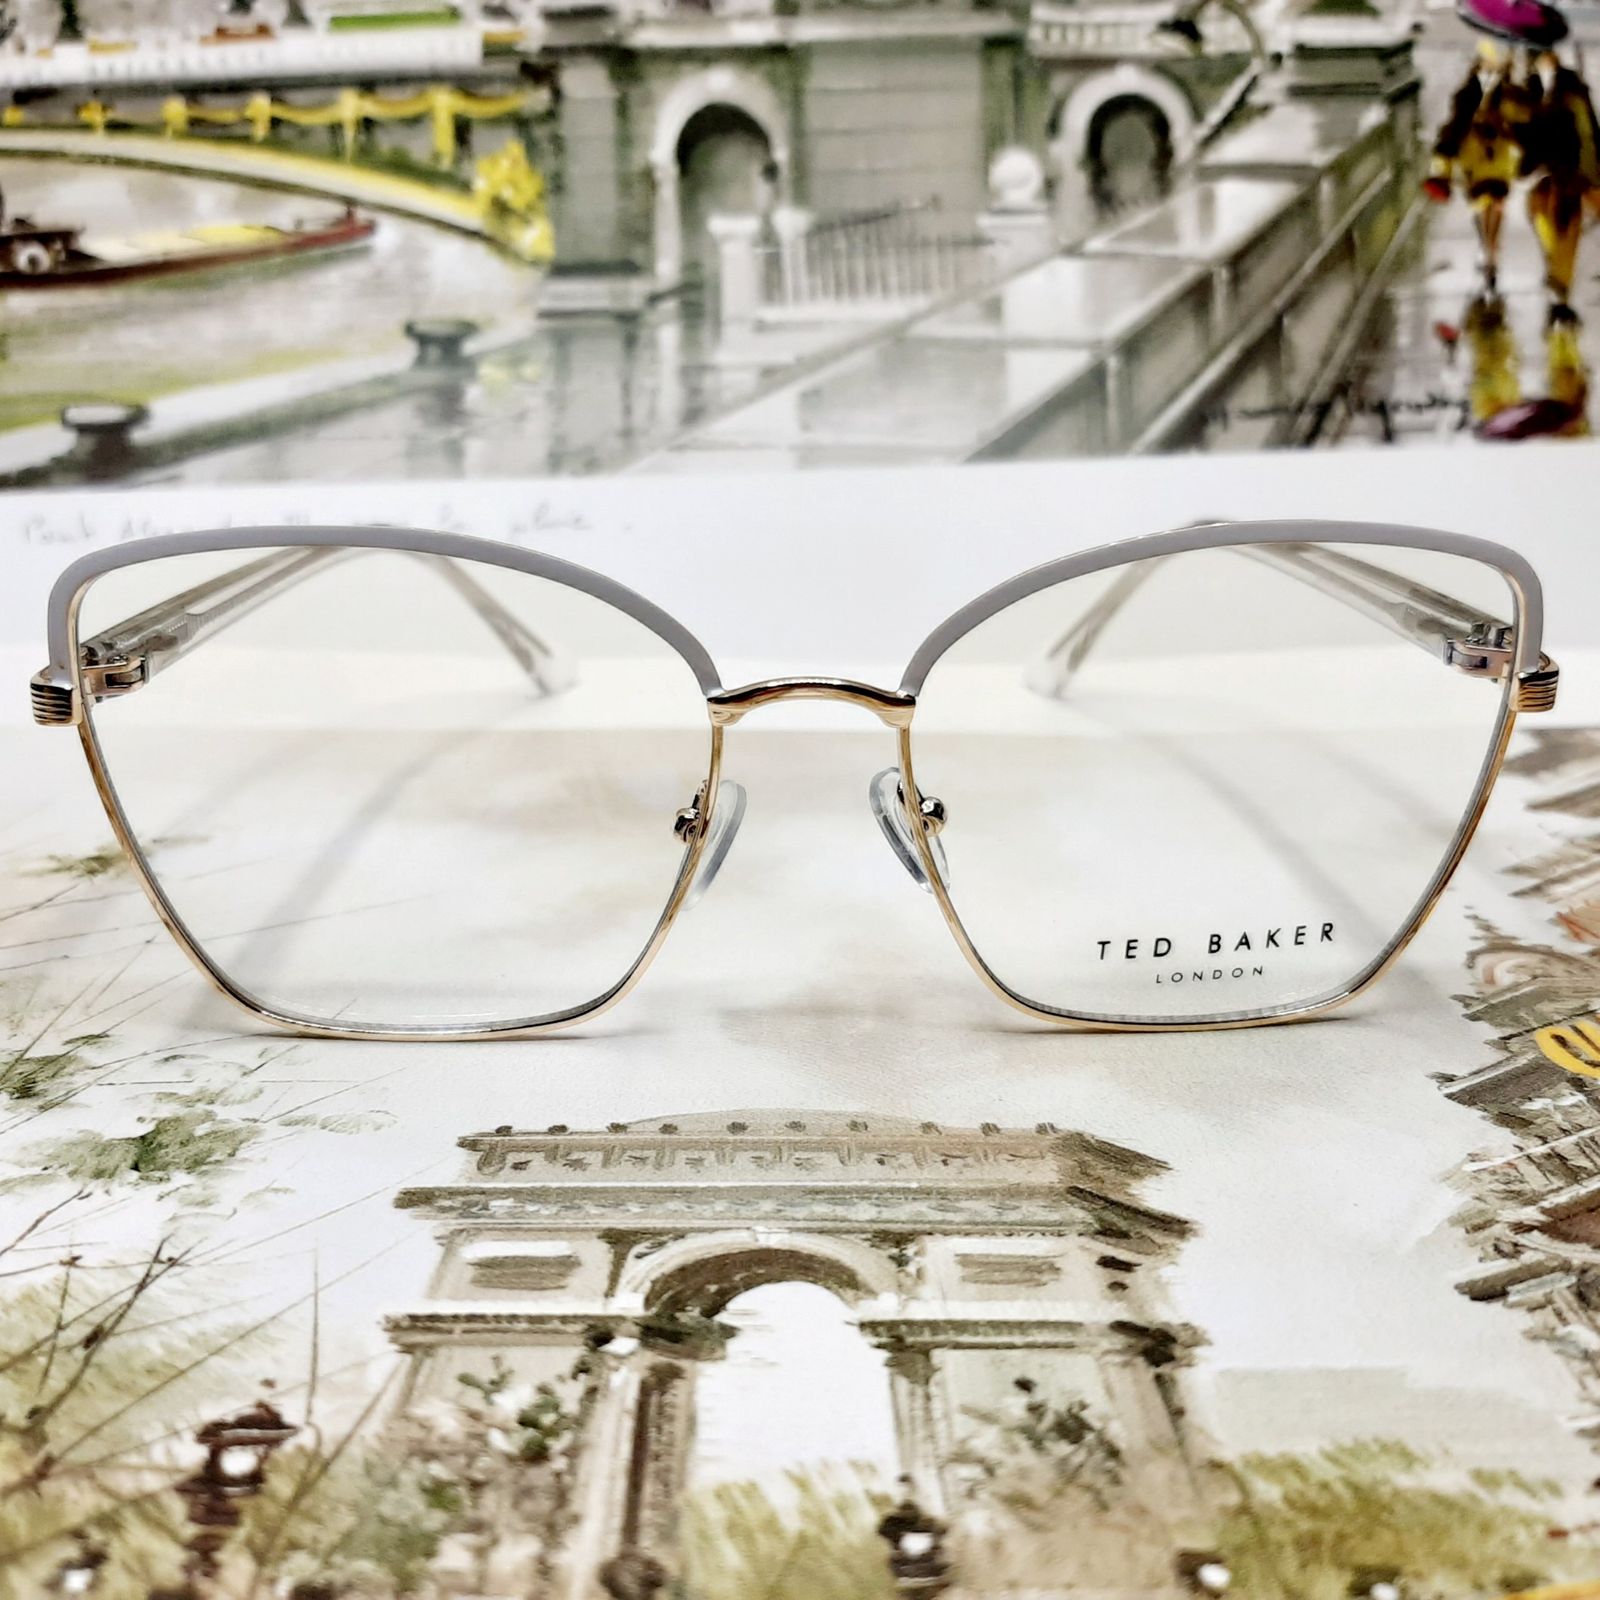 فریم عینک طبی زنانه تد بیکر مدل T95720c1 -  - 2